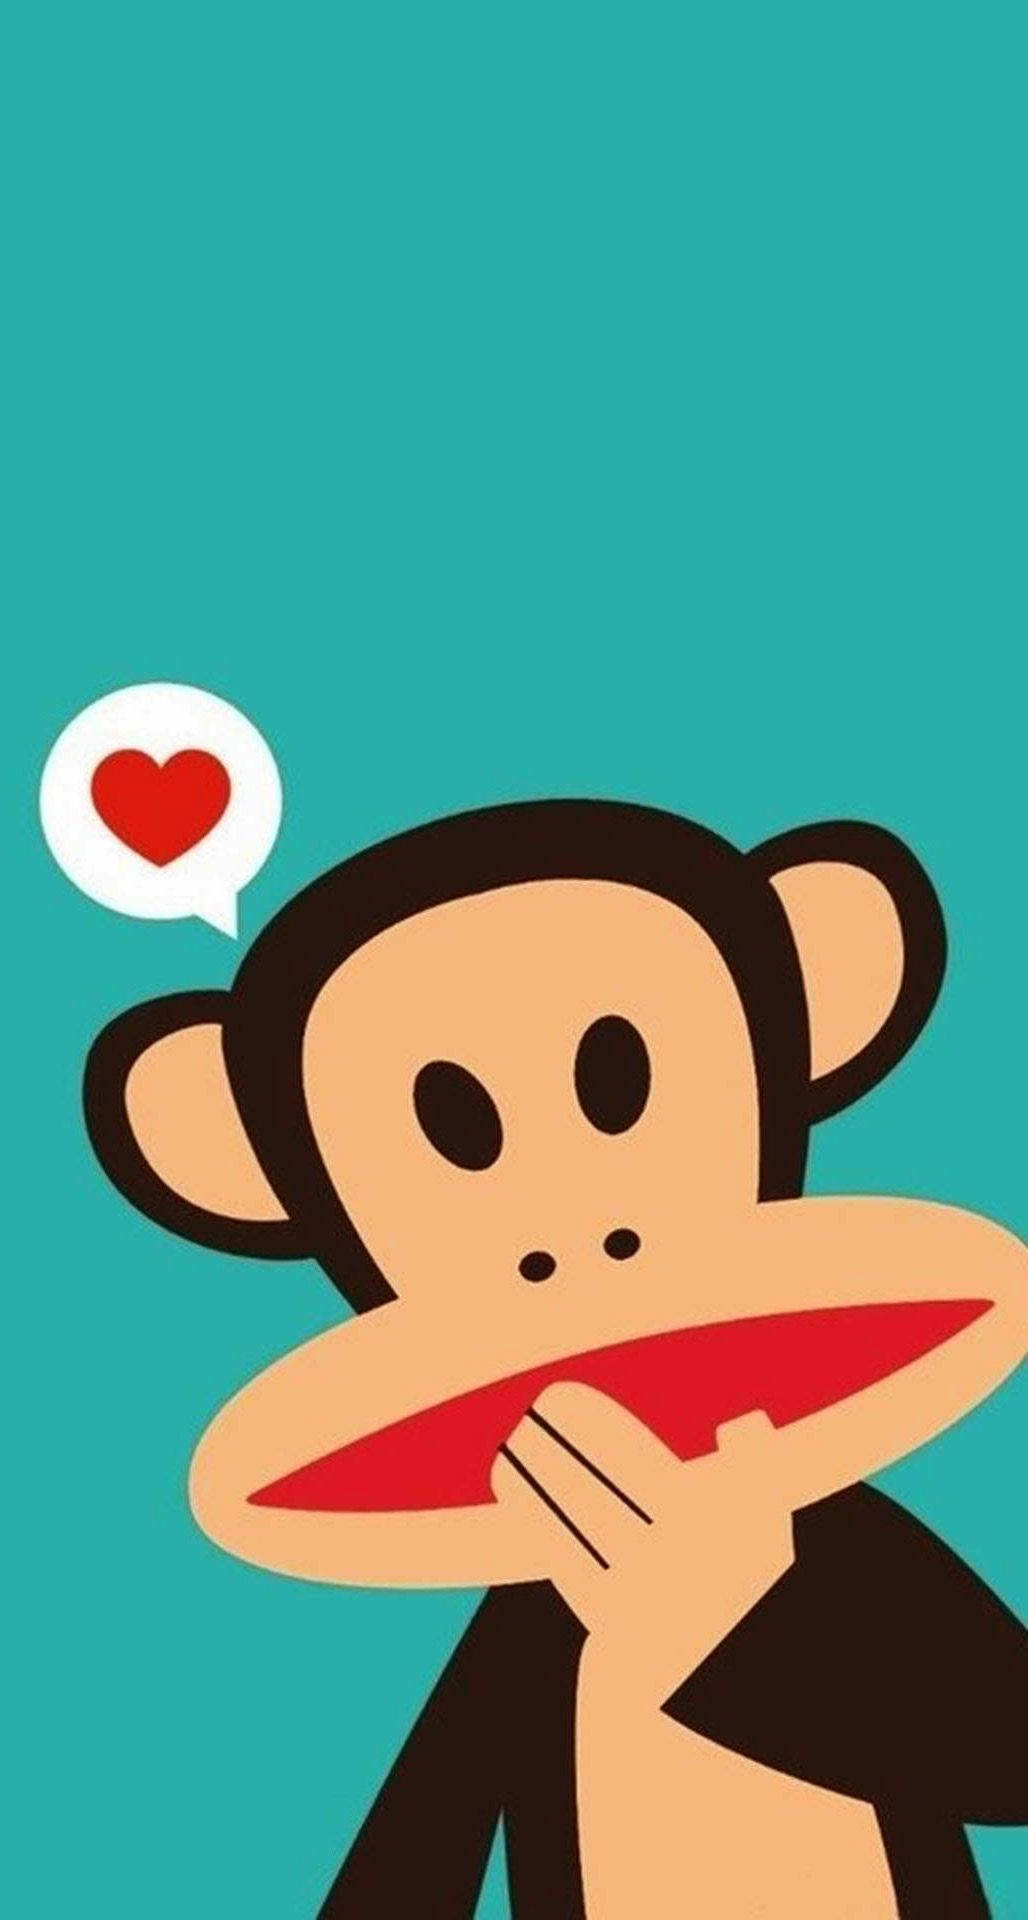 Cute Monkey Vector Art Wallpaper